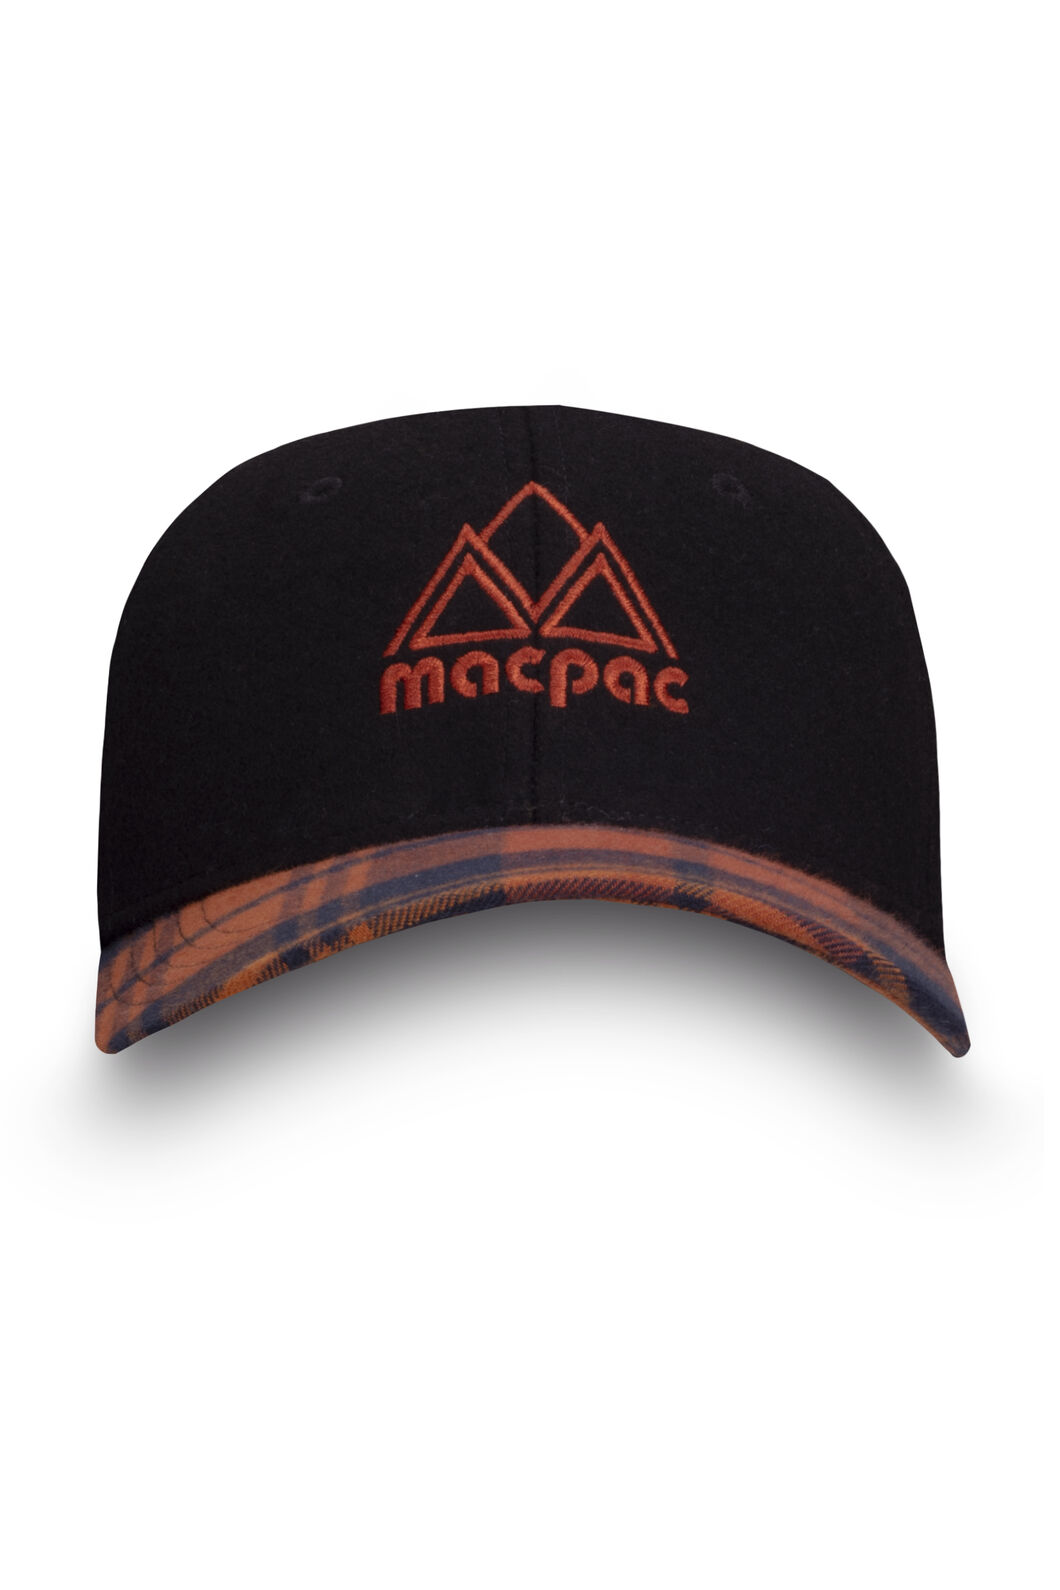 Macpac Porters Vintage Cap | Macpac